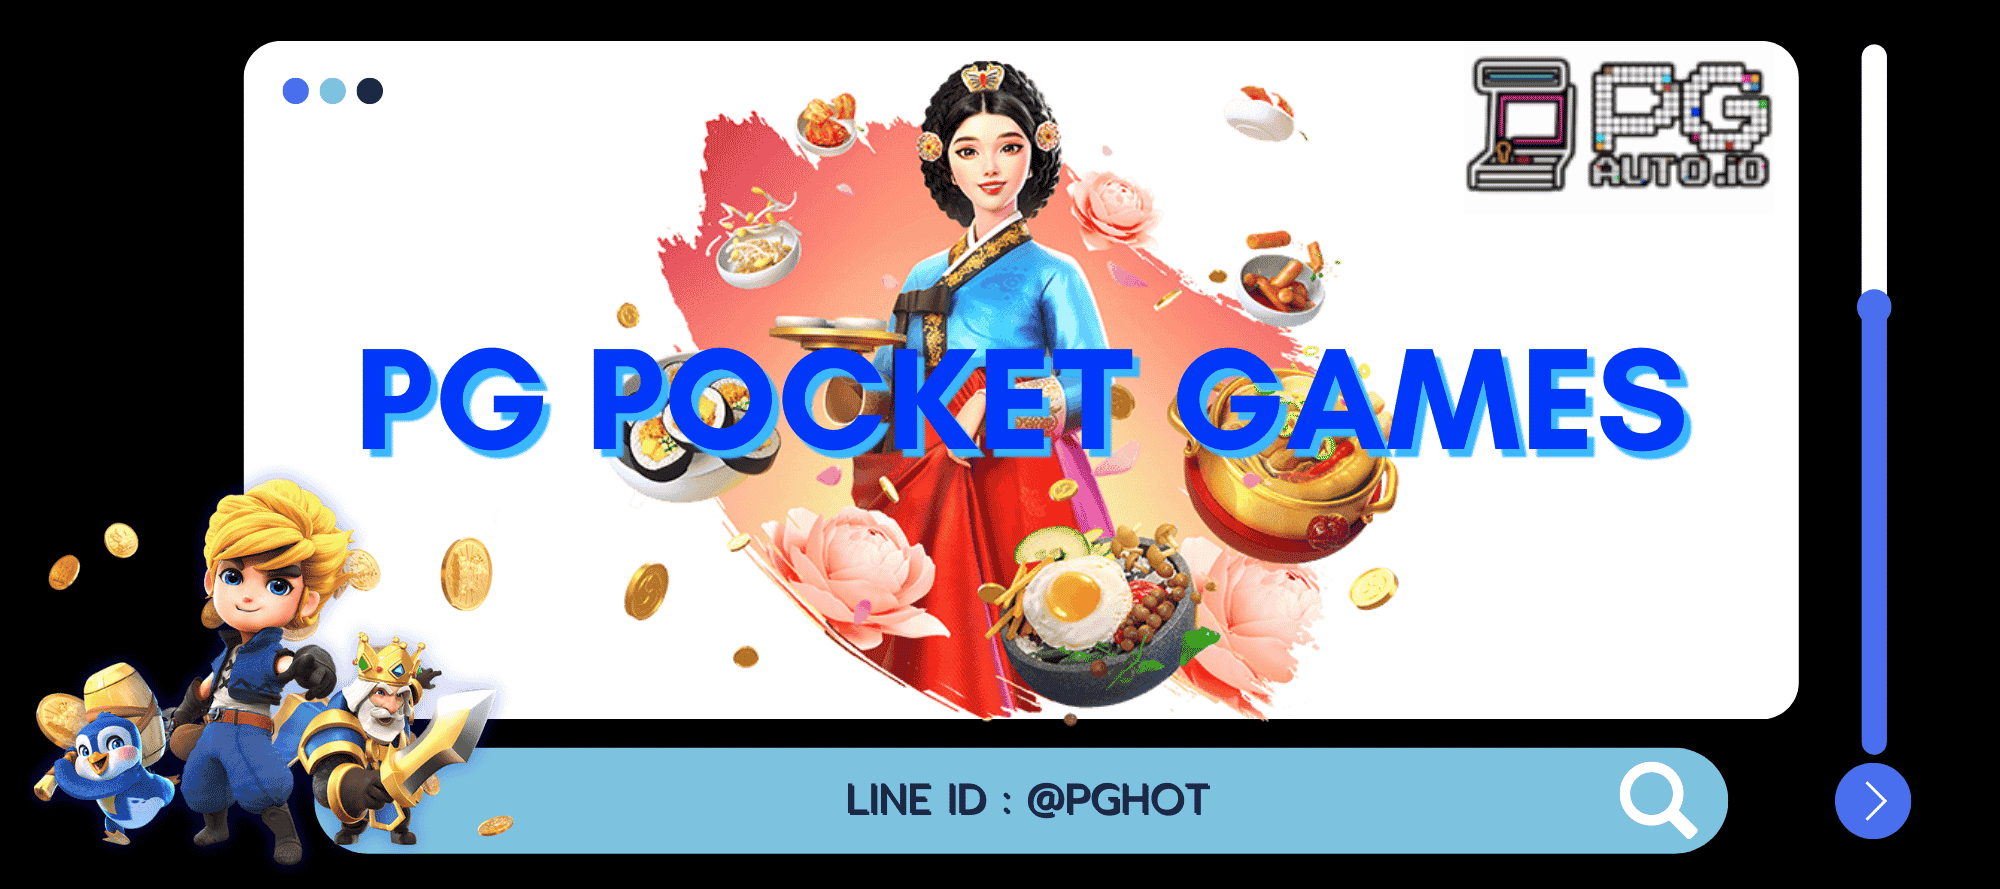 pg pocket games